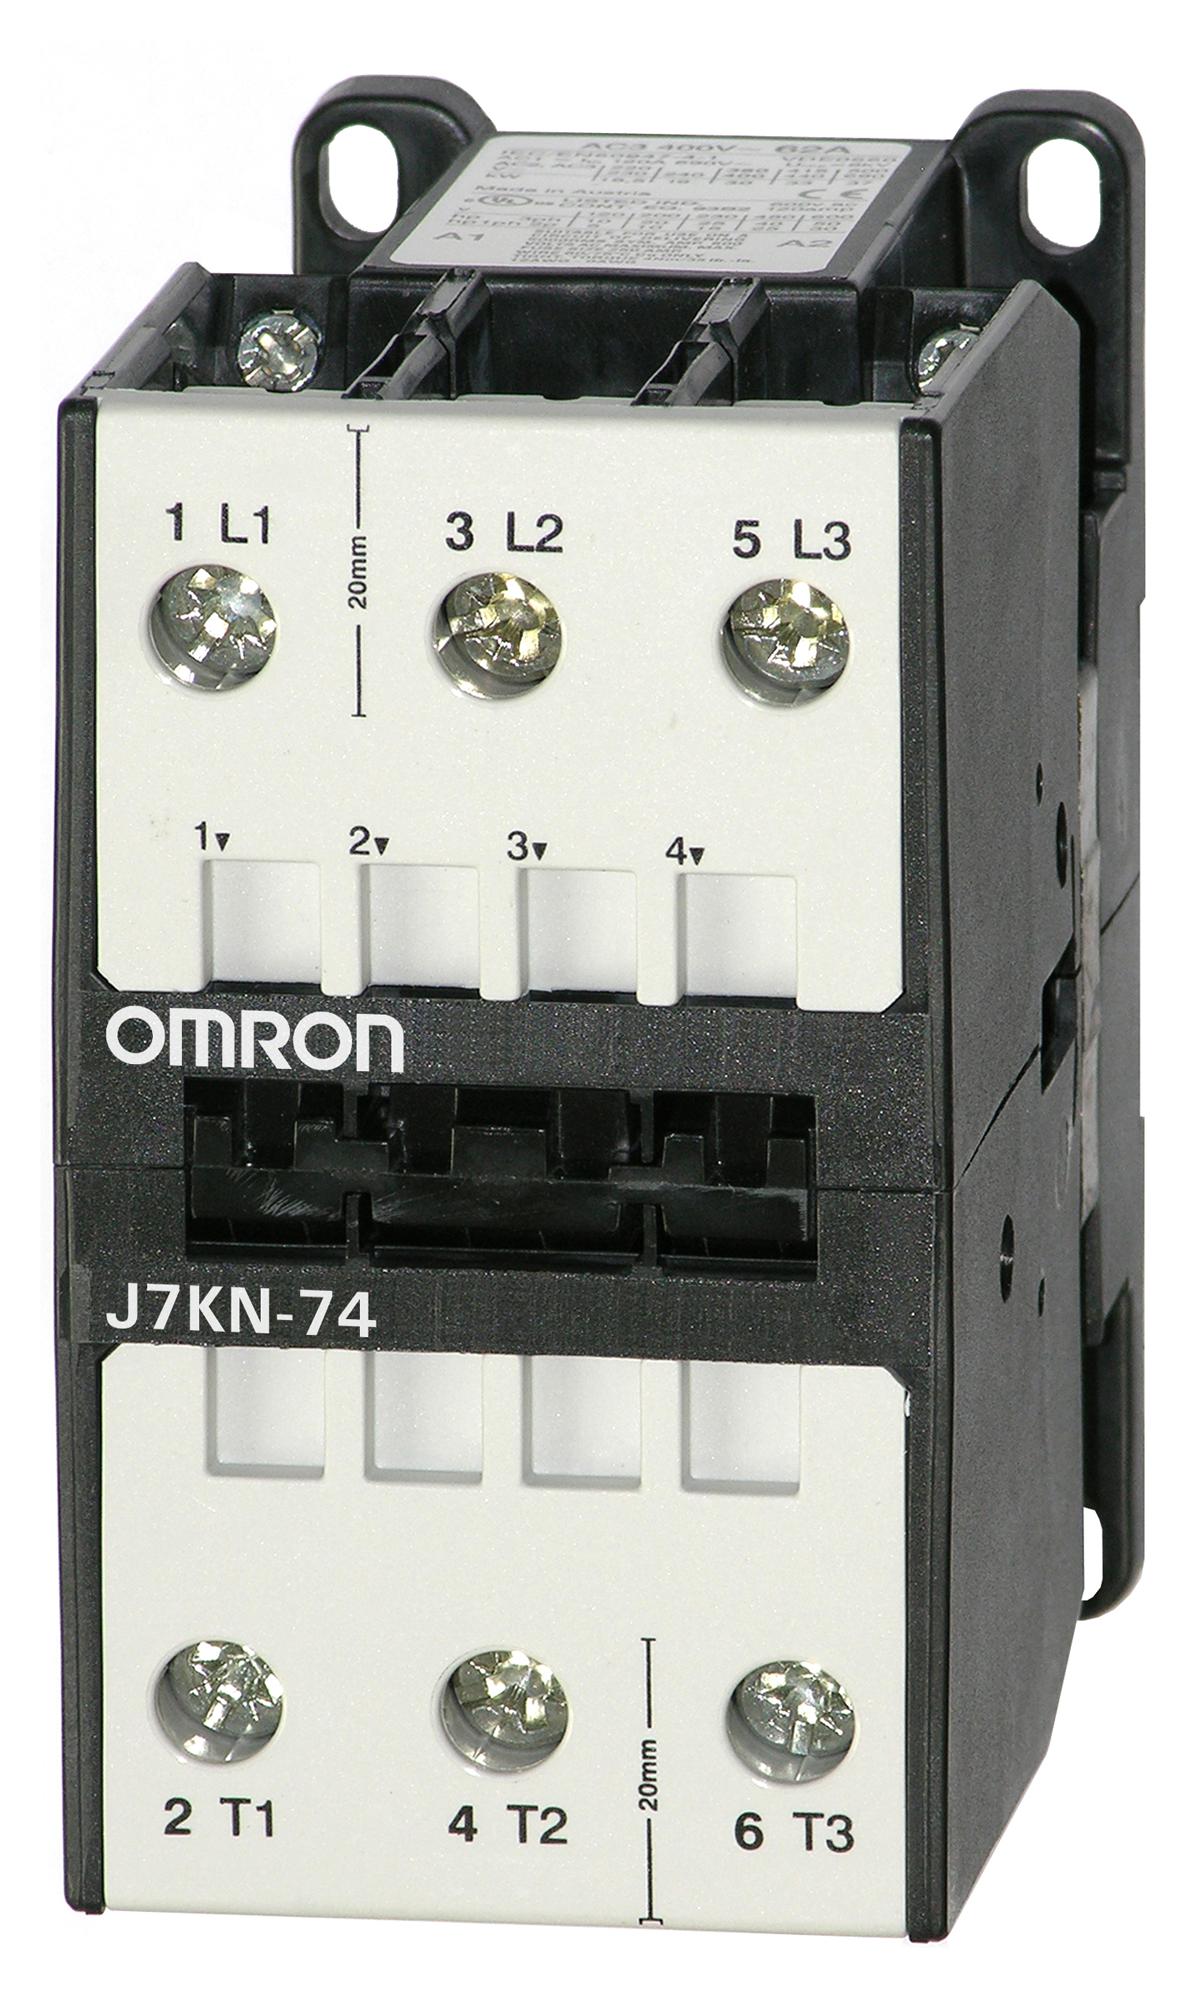 J7KN-74 230 CONTACTORS RELAYS OMRON